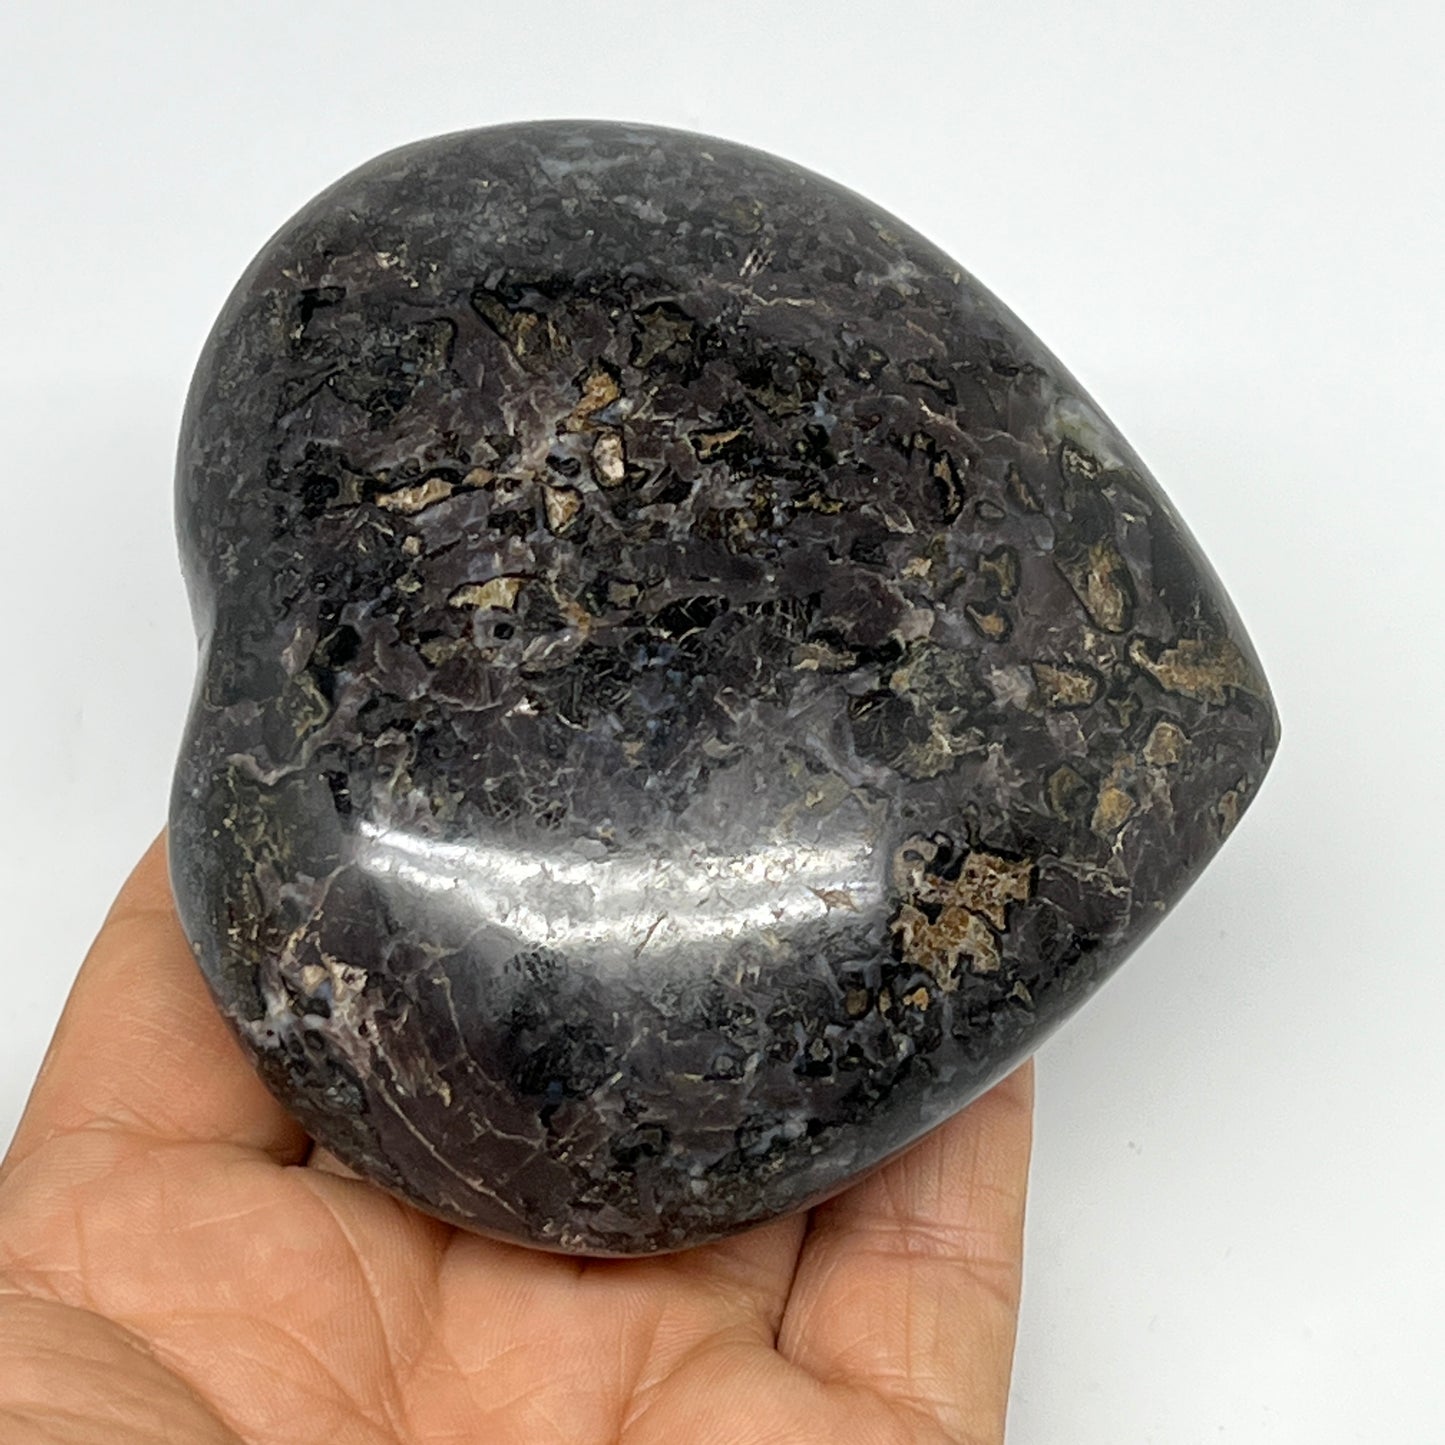 351.8g,3.2"x3.6"x1.3" Indigo Gabro Merlinite Heart Gemstone @Madagascar,B19934